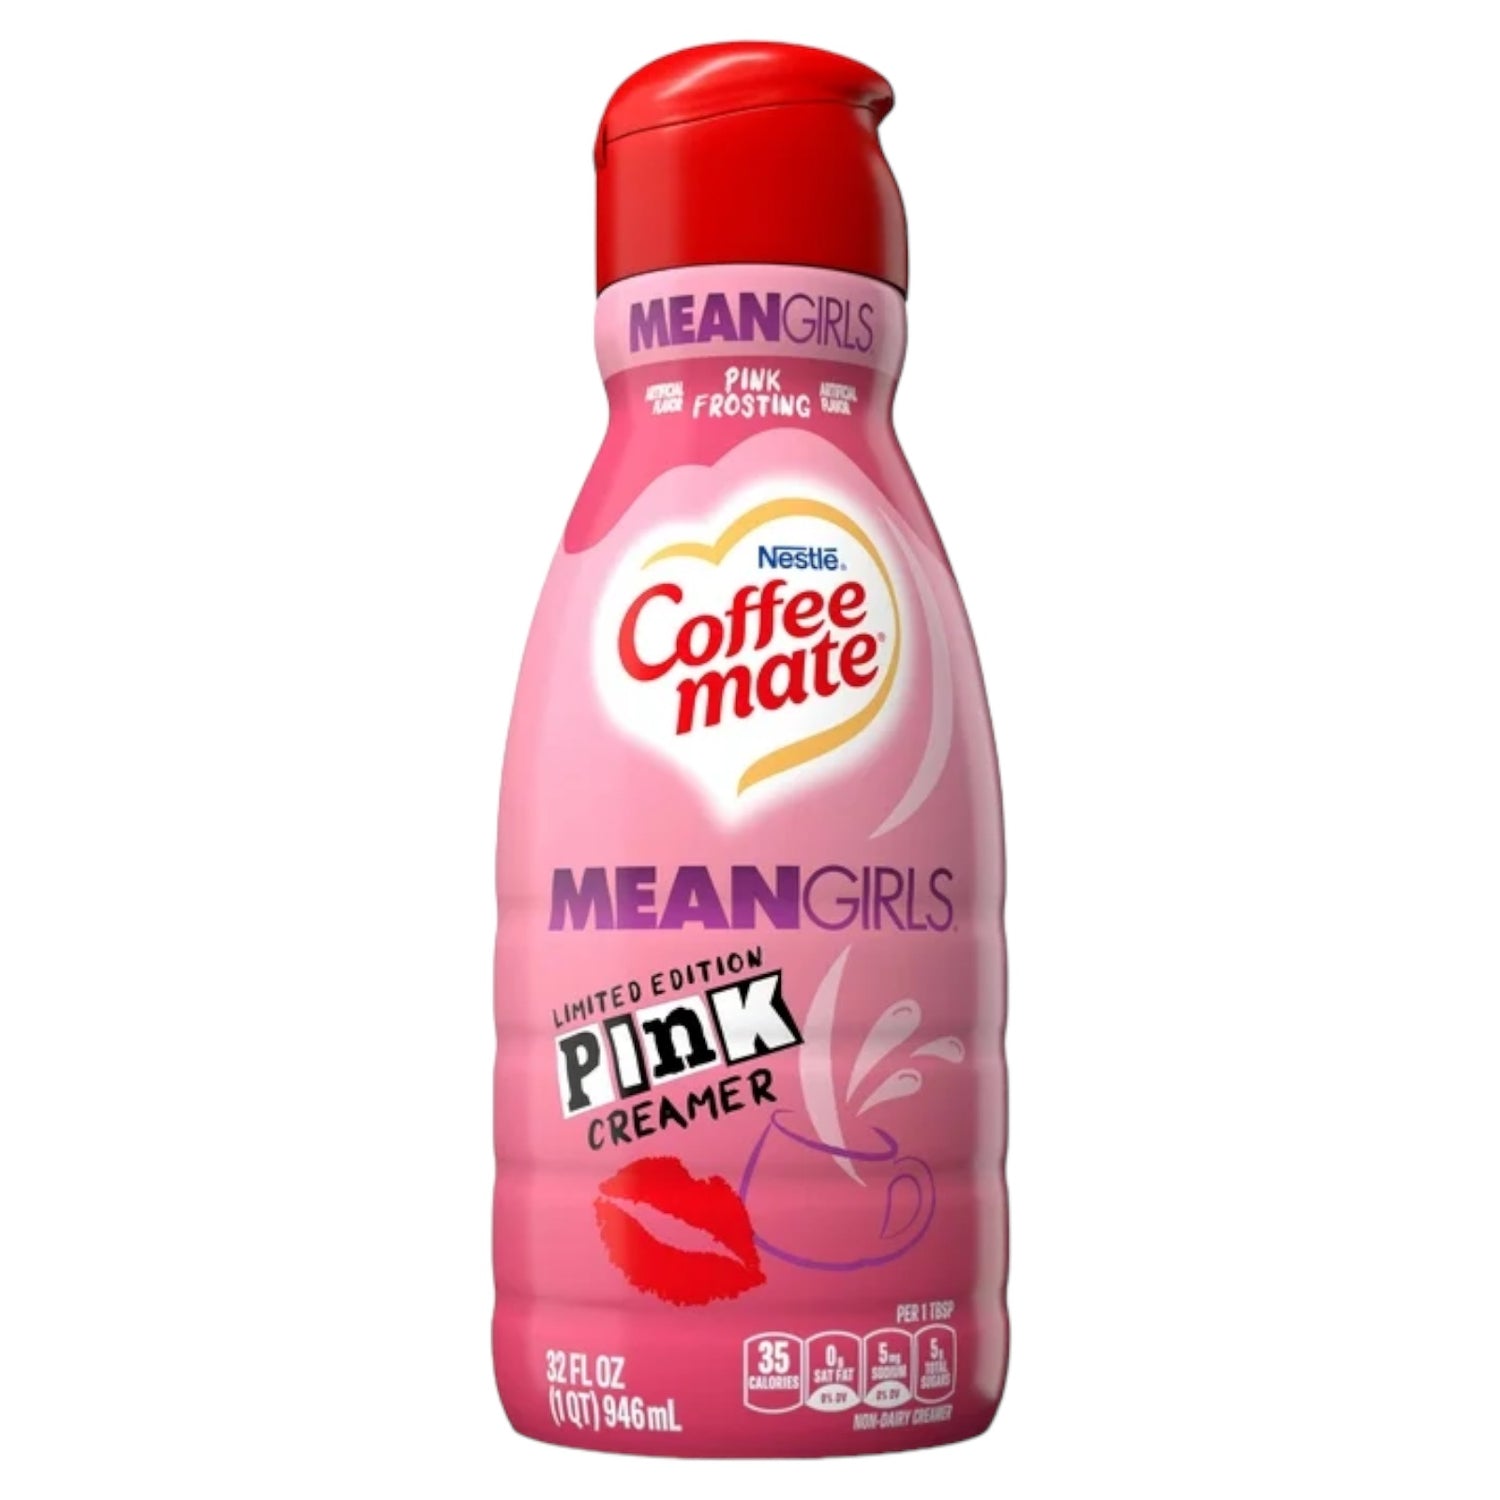 Coffee mate Liquid Creamer Mean Girls